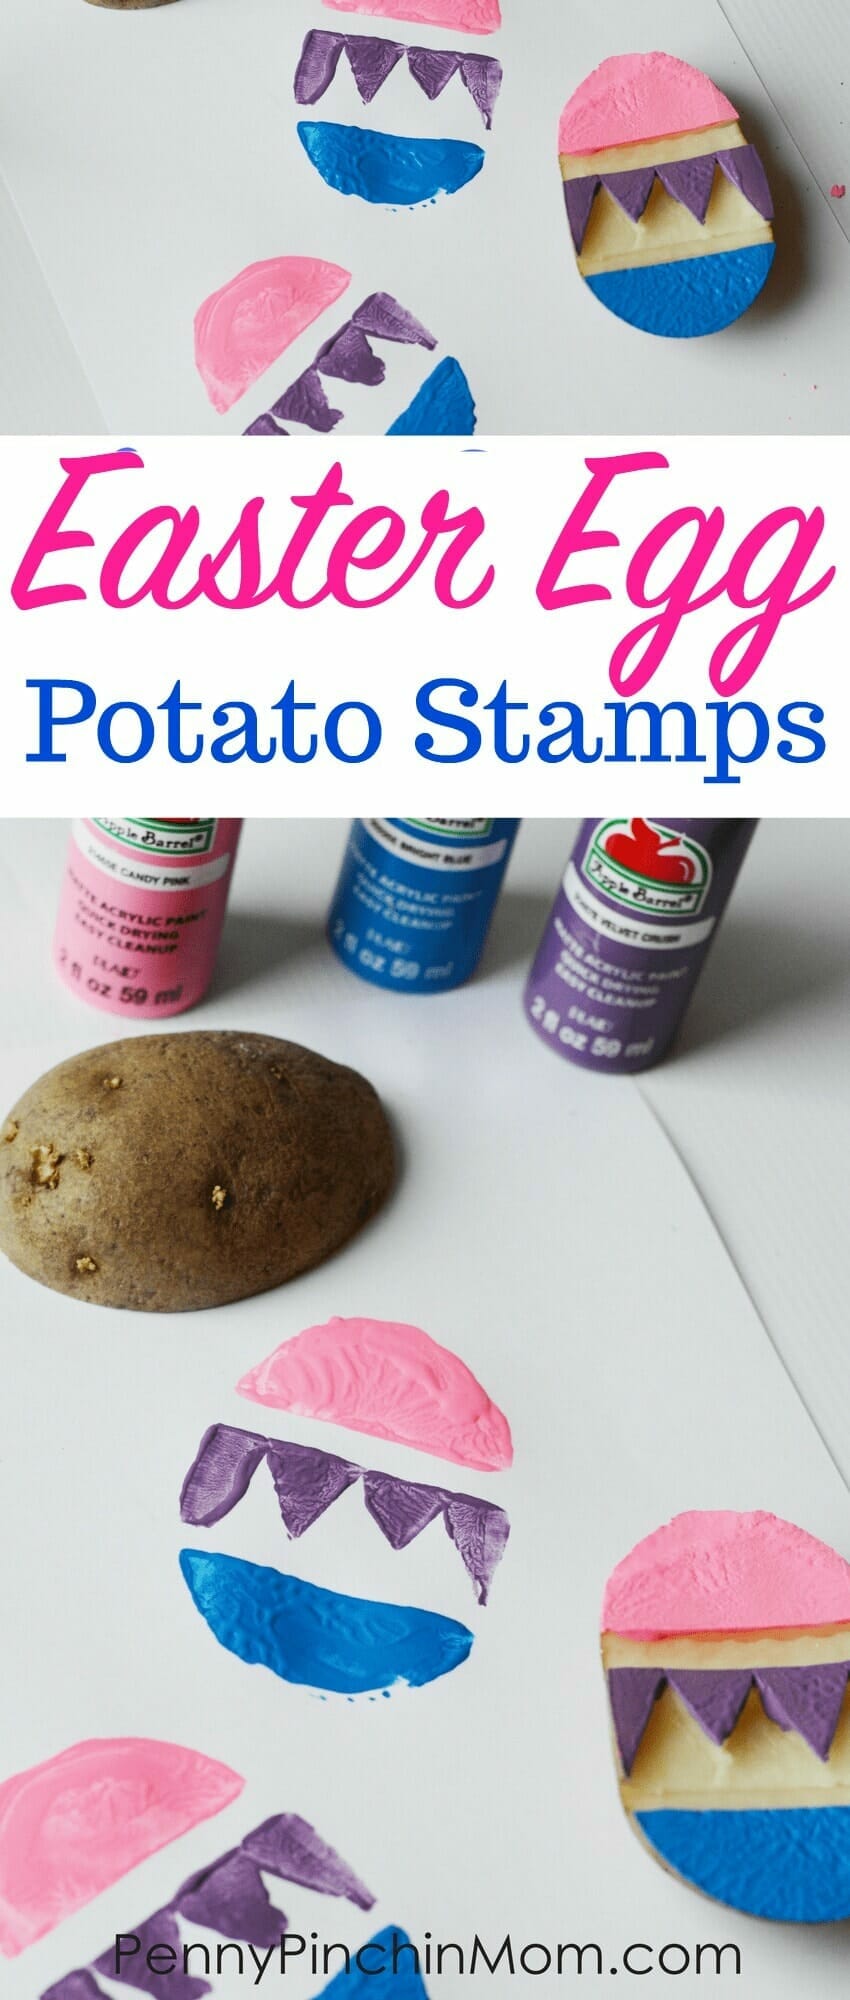 egg potato stamp